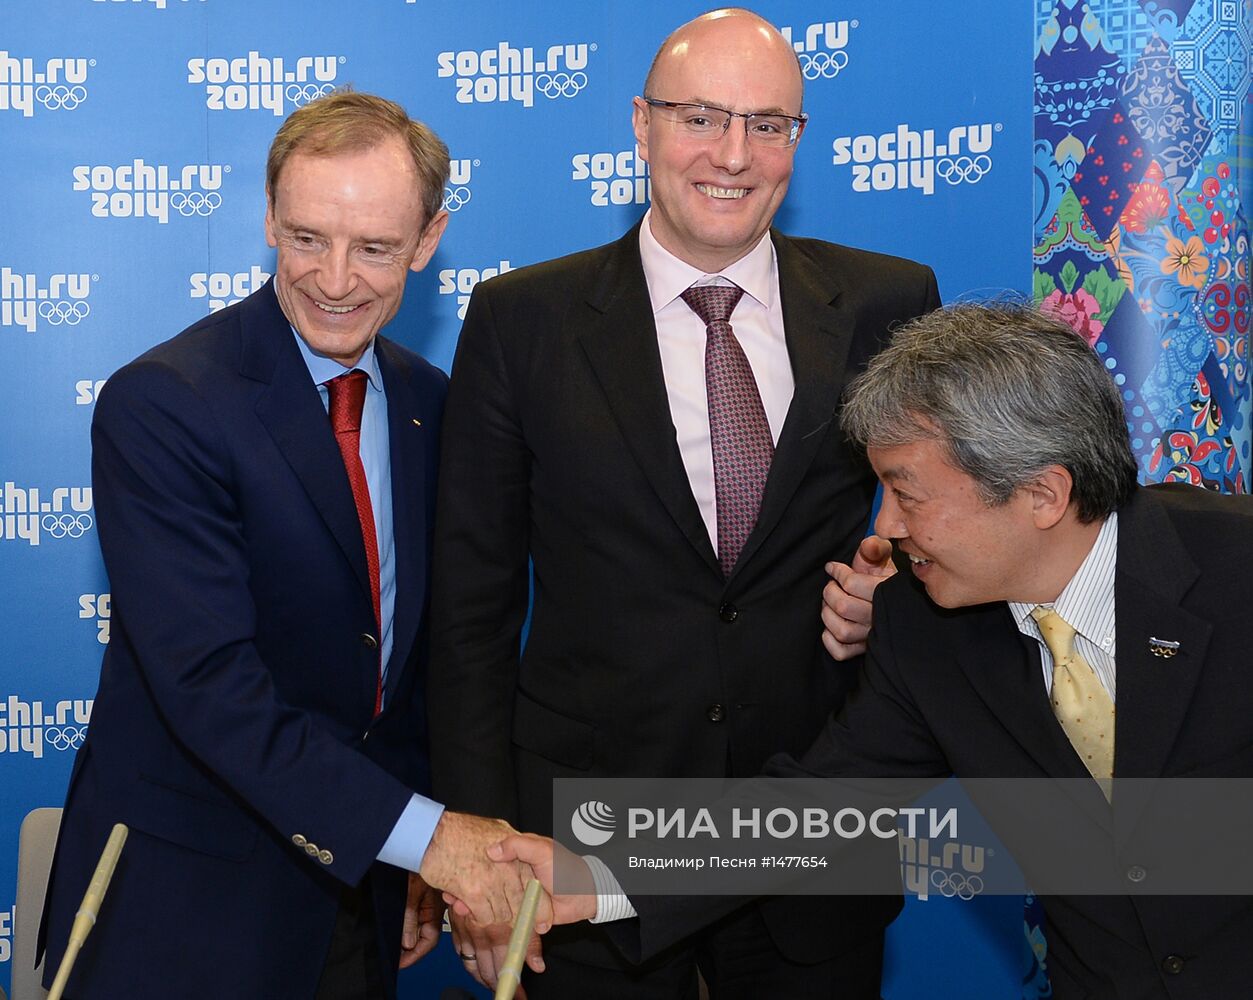 Подписание соглашения между Оргкомитетом "Сочи-2014" и Panasonic